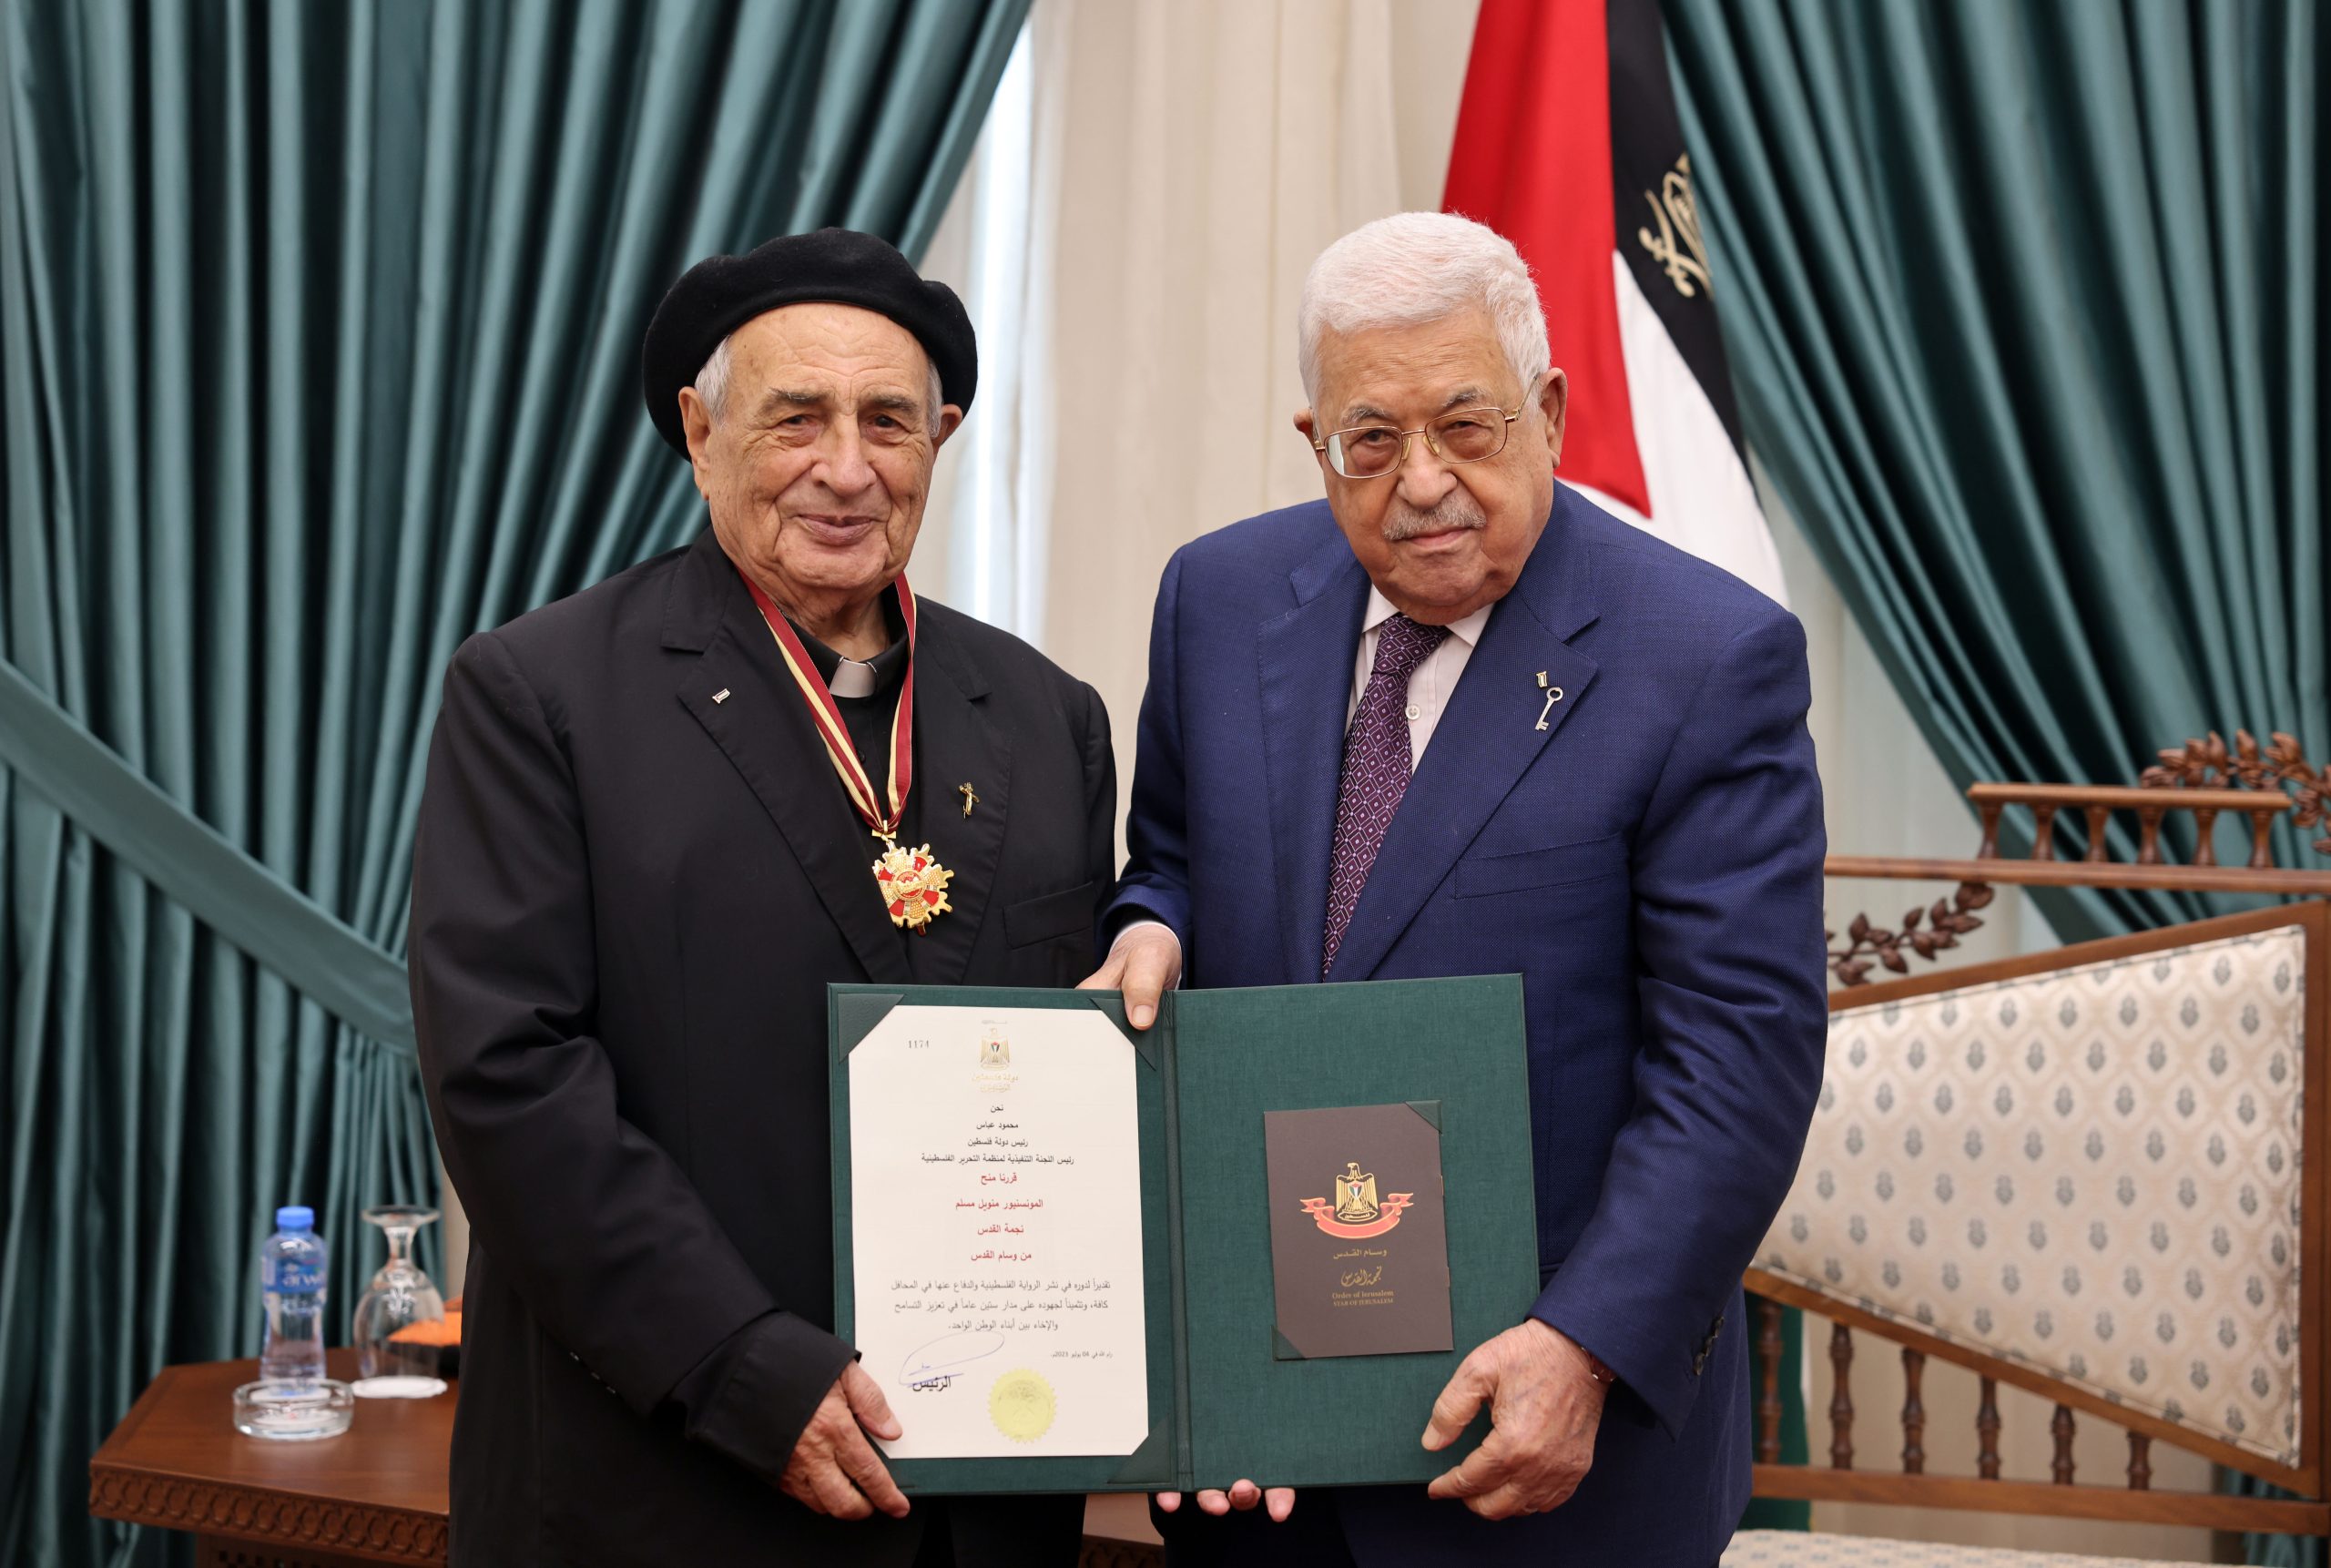 الرئيس محمود عباس يقلد المونسنيور مانويل مسلم نجمة القدس